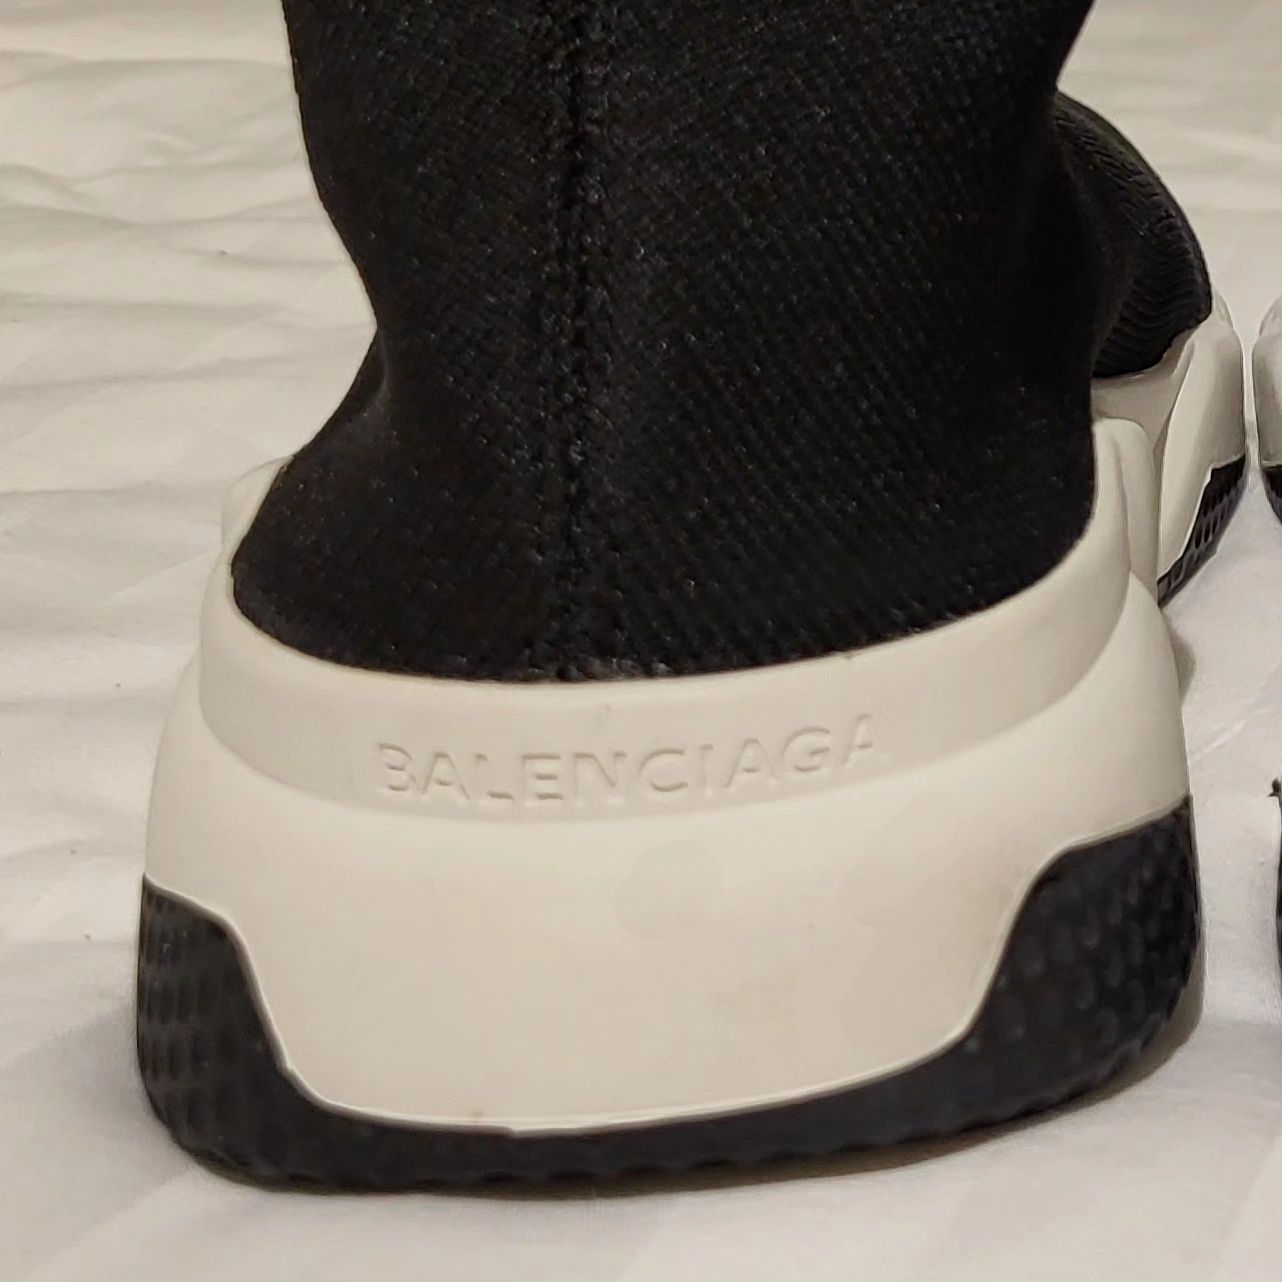 Balenciaga Speed Sneakers